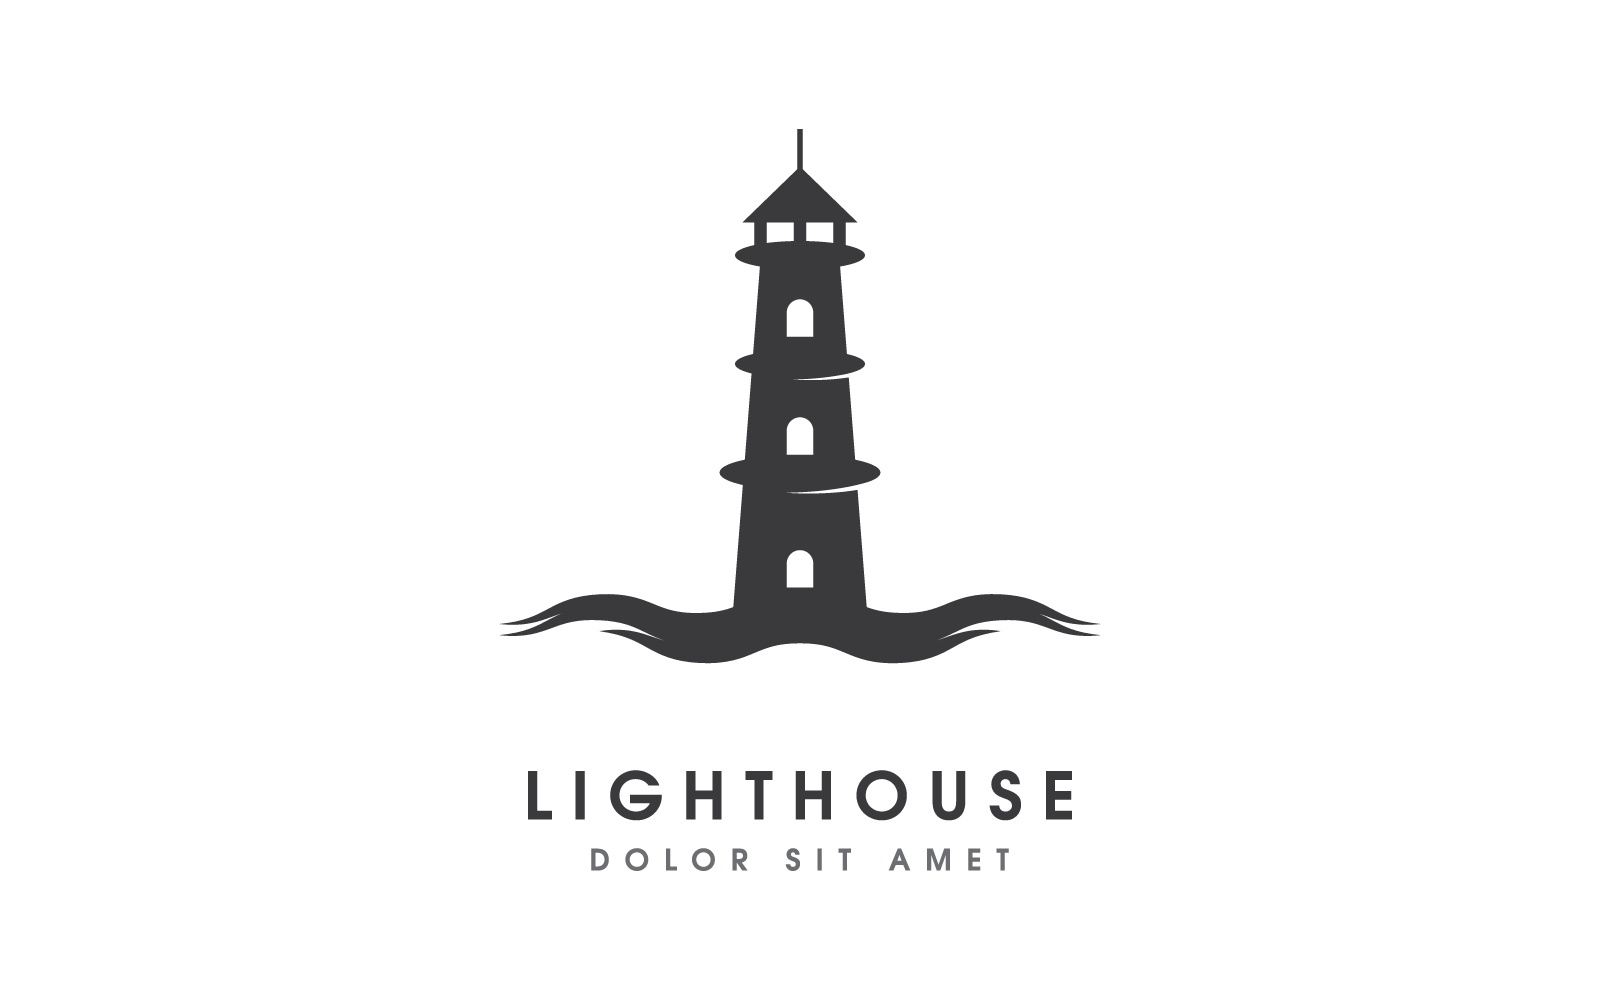 Vorlage für das Vektordesign des Leuchtturm-Logos